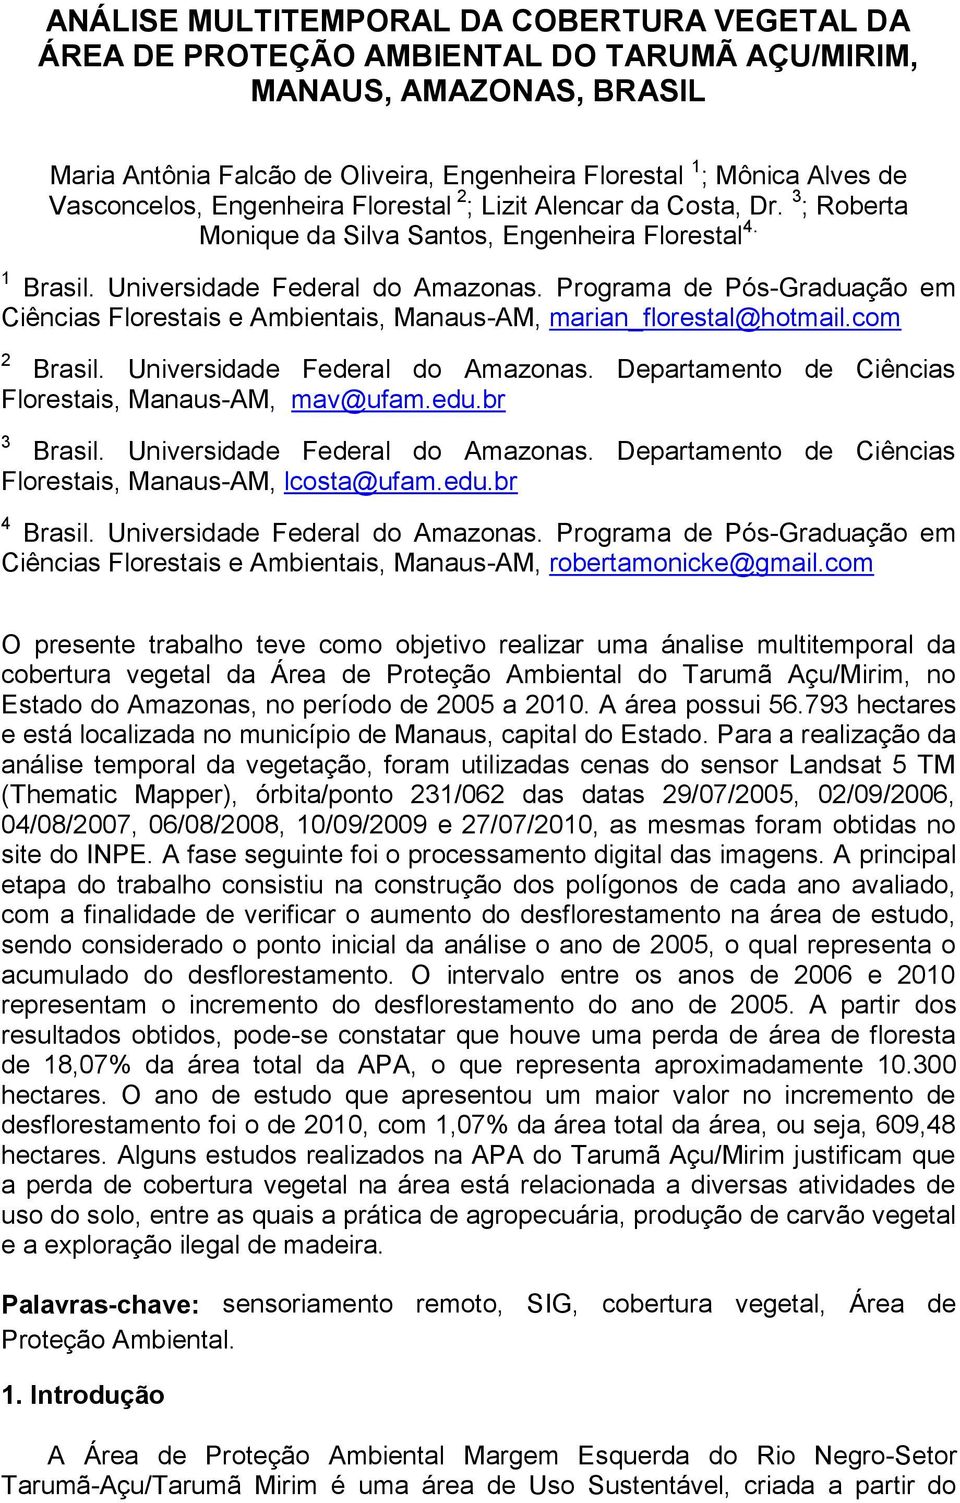 Programa de Pós-Graduação em Ciências Florestais e Ambientais, Manaus-AM, marian_florestal@hotmail.com 2 Brasil. Universidade Federal do Amazonas.